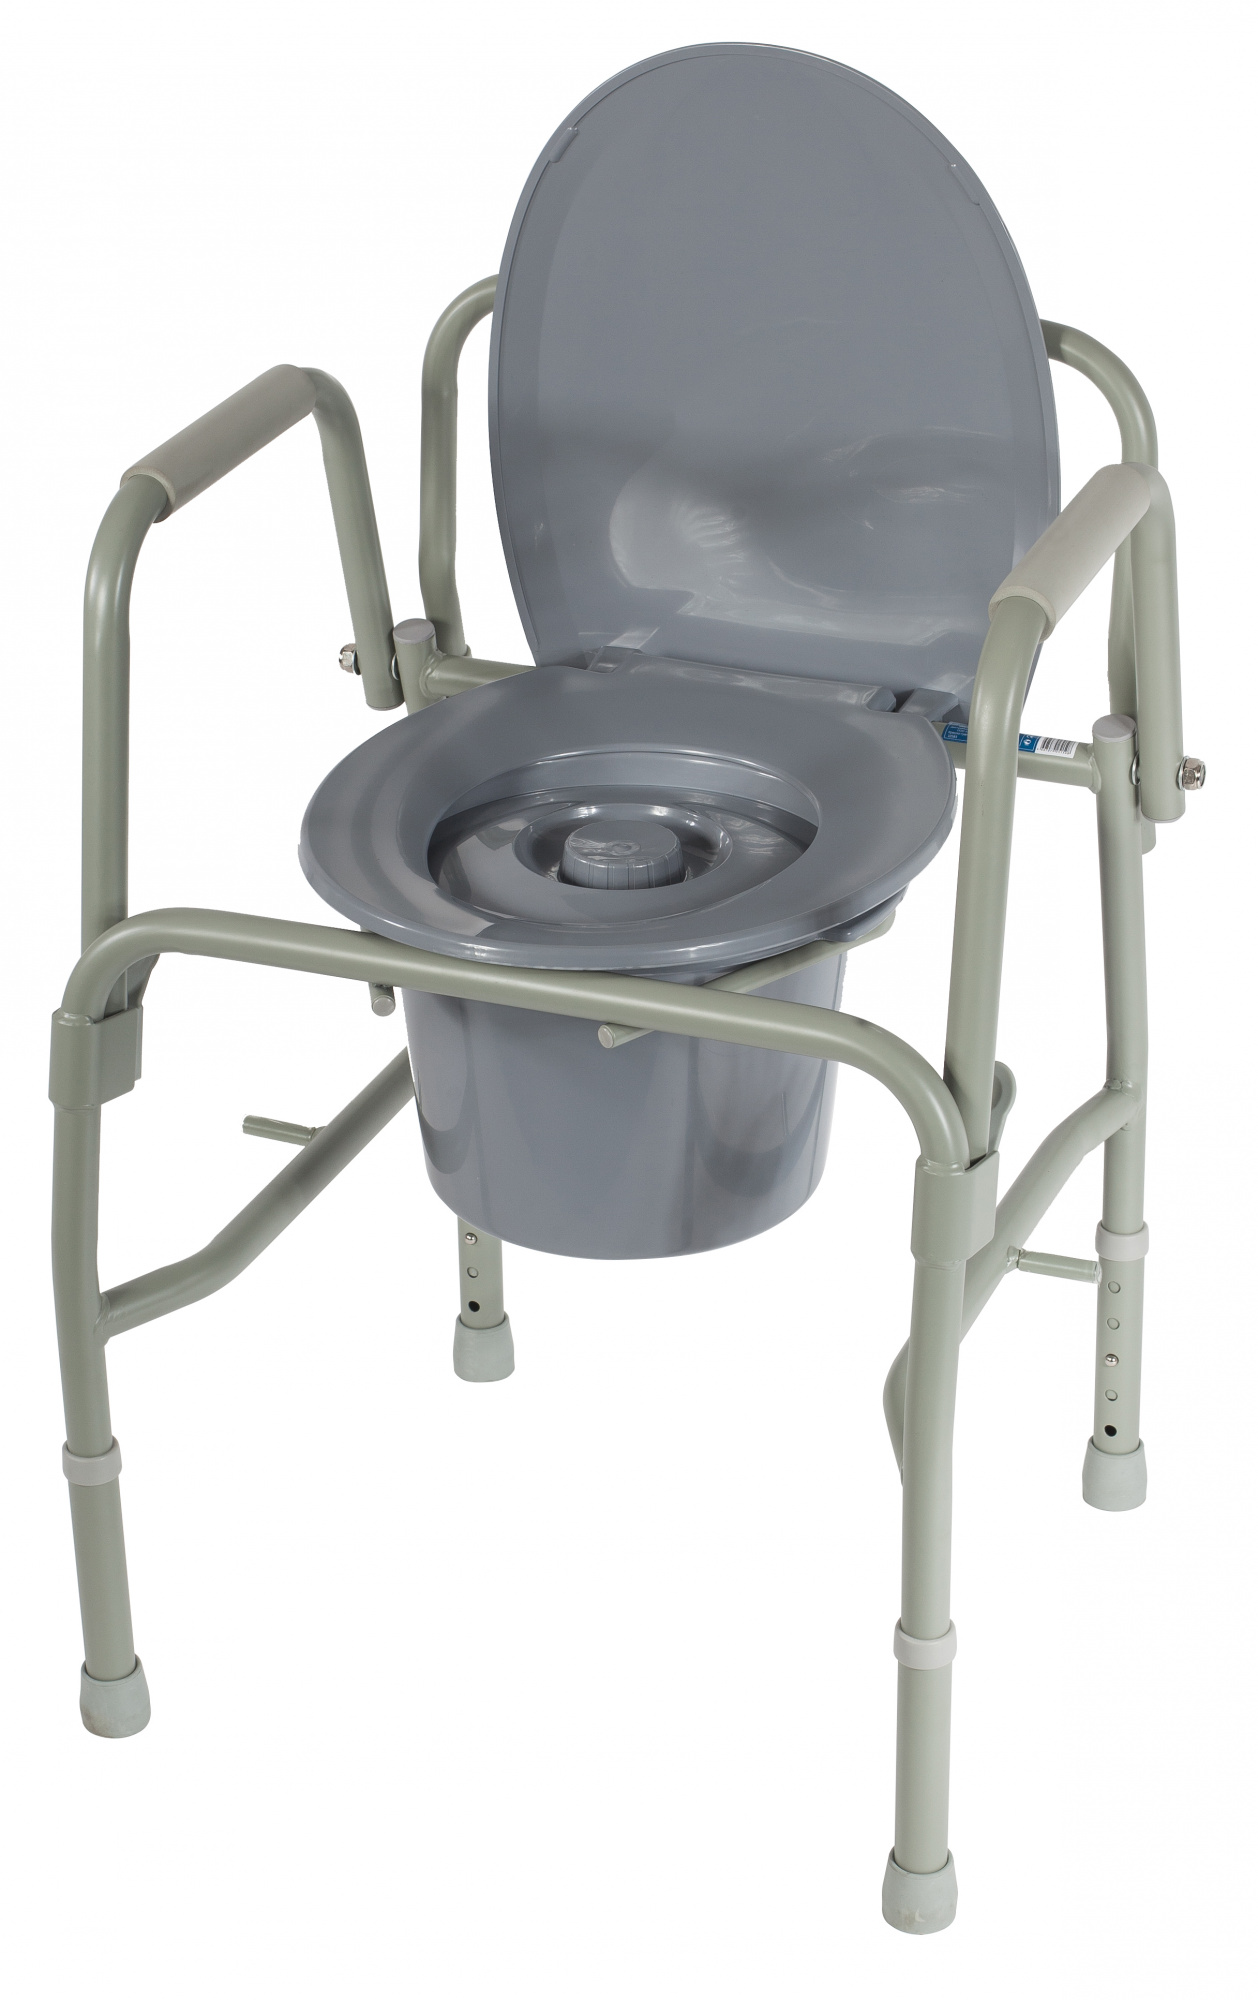 Туалет для инвалидов цена. Кресло туалет арт 10583. Симс-2 кресло-туалет 10583. Тривес кресло-туалет ca668 /кмрэ/. Симс-2 кресло-туалет 10580.